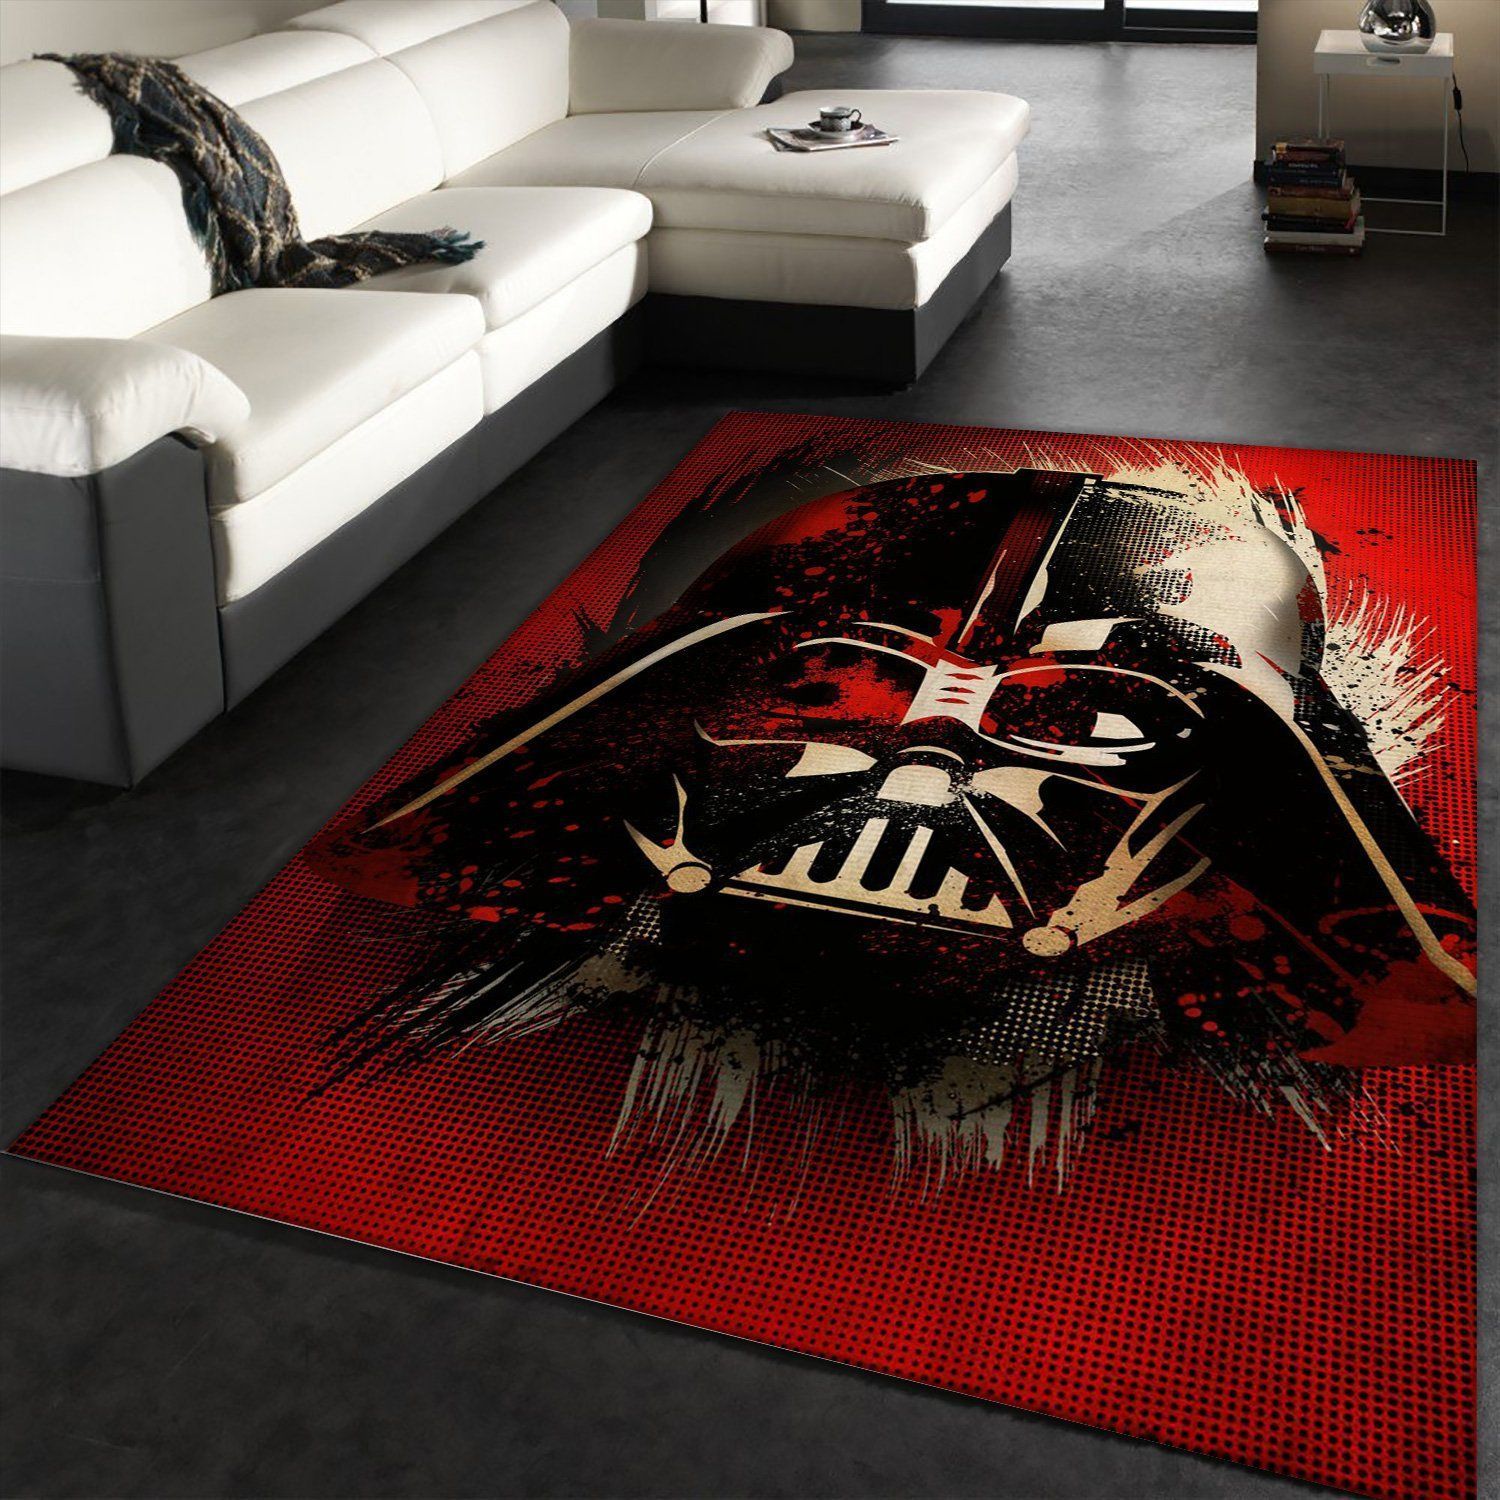 Vader Splatter Star Wars Movie Rug Star Wars Visions Of Darth Vader Rug Home Decor Floor Decor - Indoor Outdoor Rugs